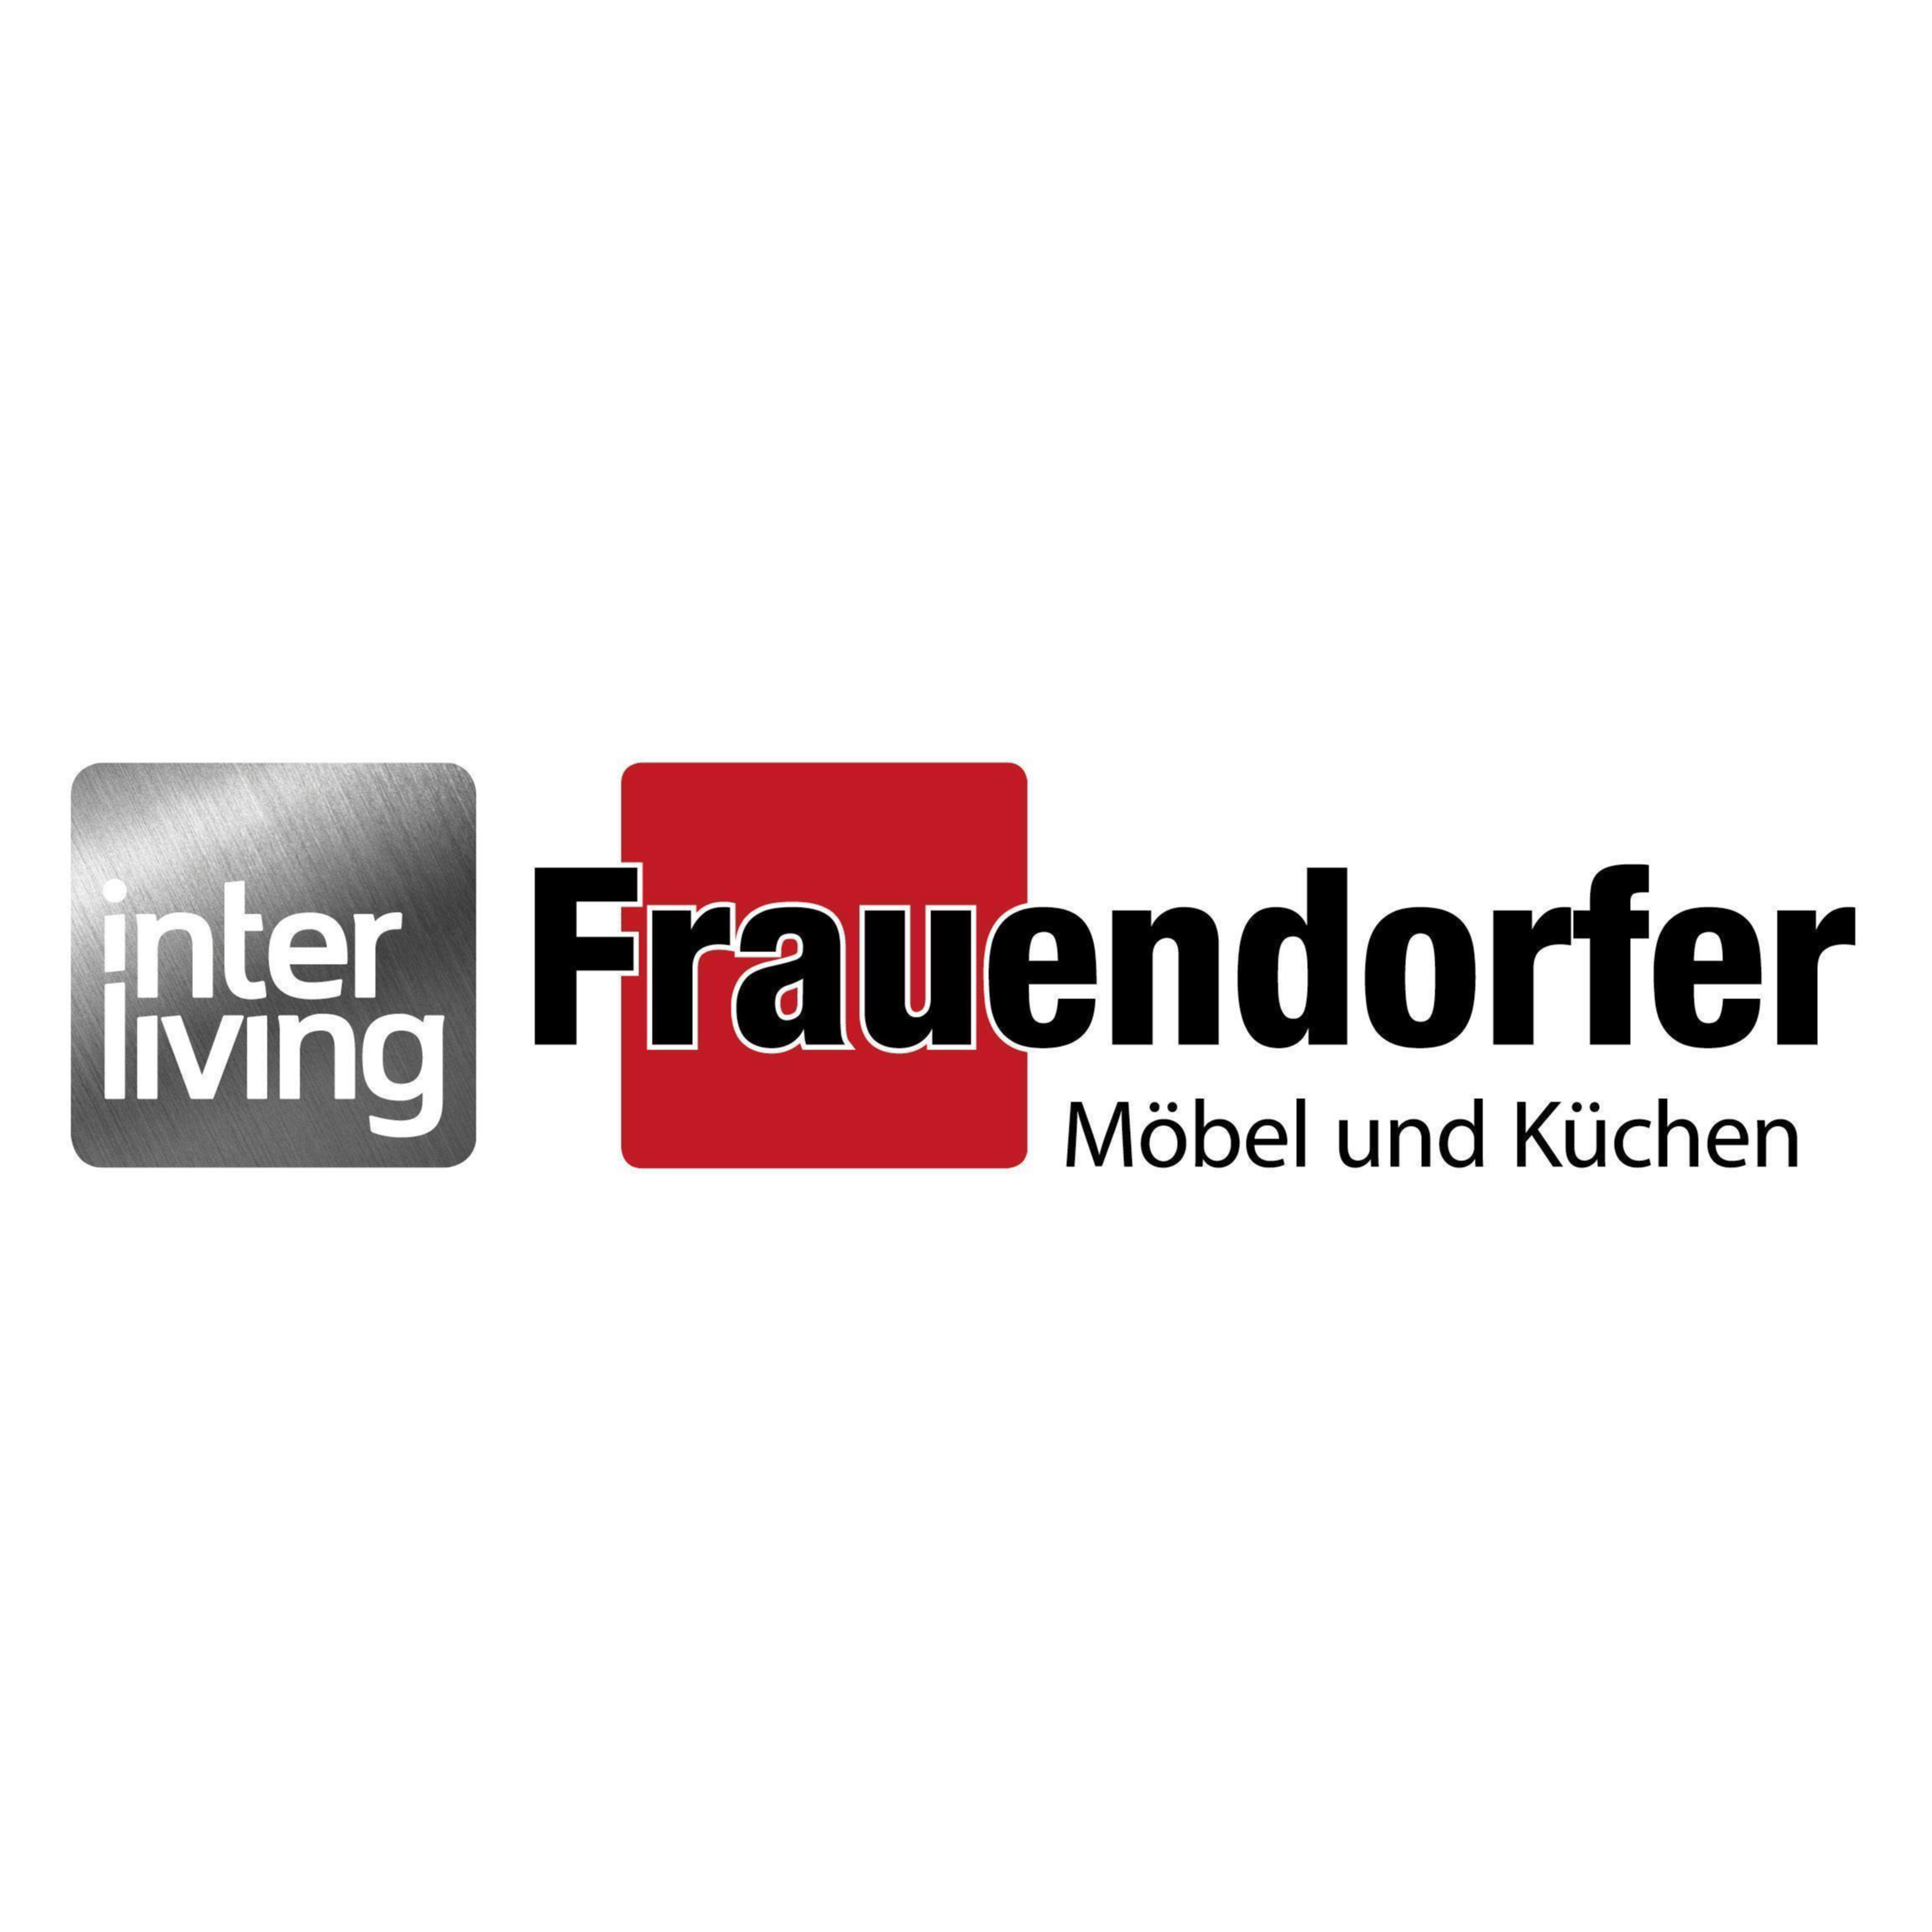 Frauendorfer  Möbel und Küchen in 92224 Amberg